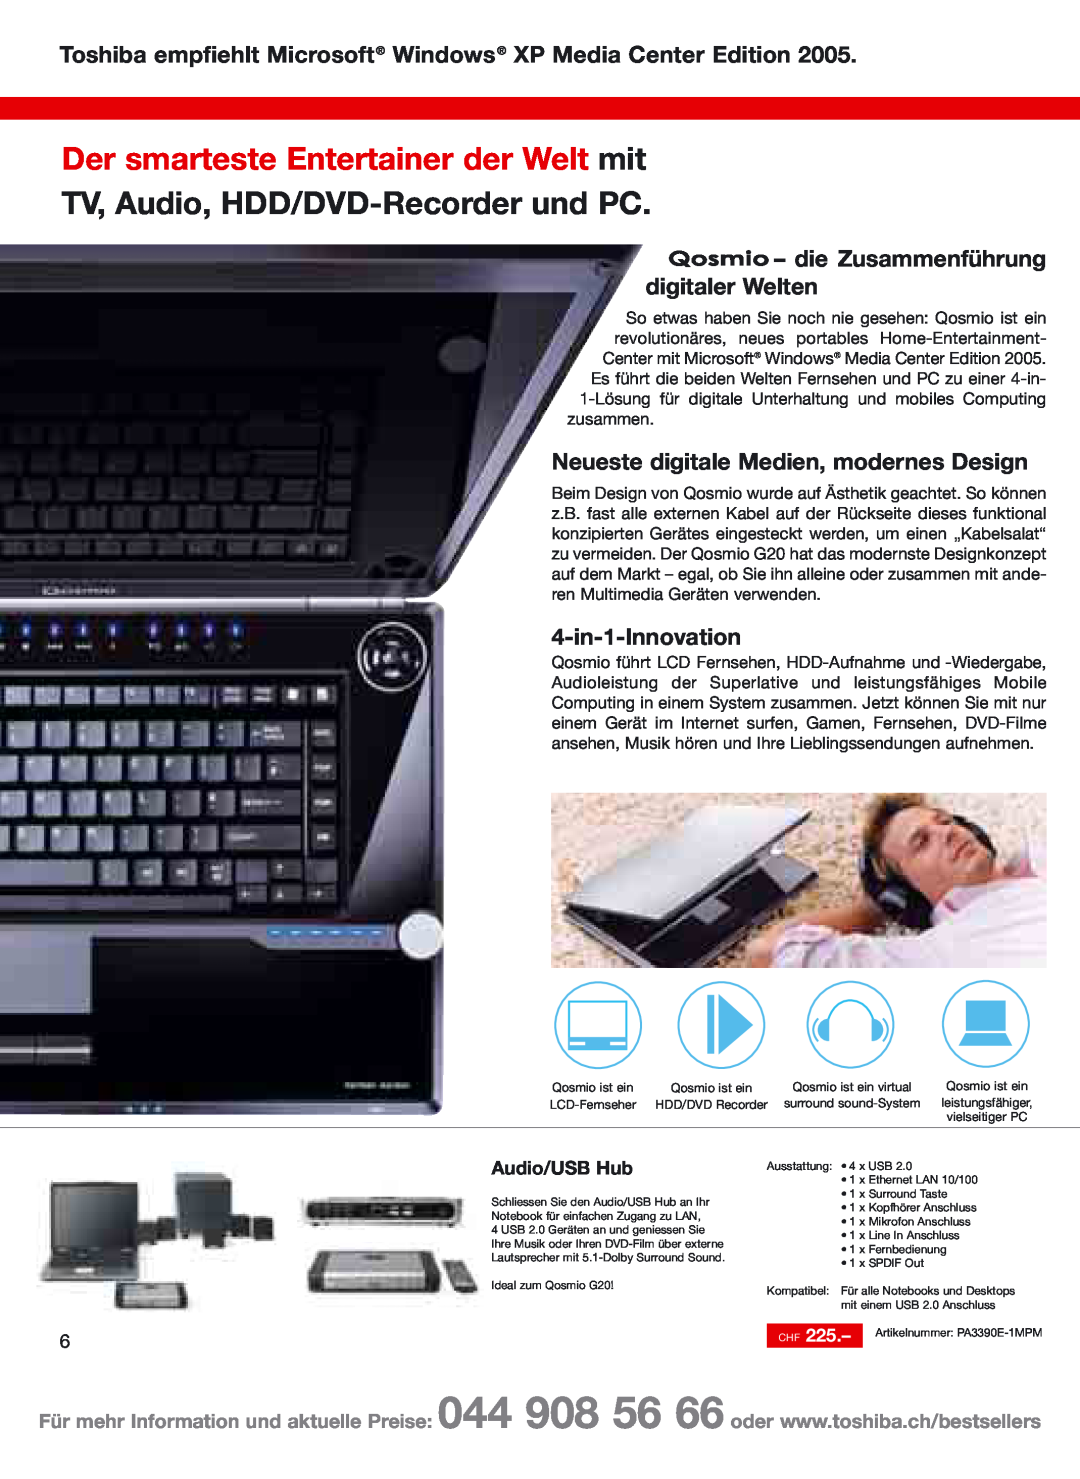 Toshiba Portg R200 manual Der smarteste Entertainer der Welt mit, TV, Audio, HDD/DVD-Recorder und PC, 4-in-1-Innovation 